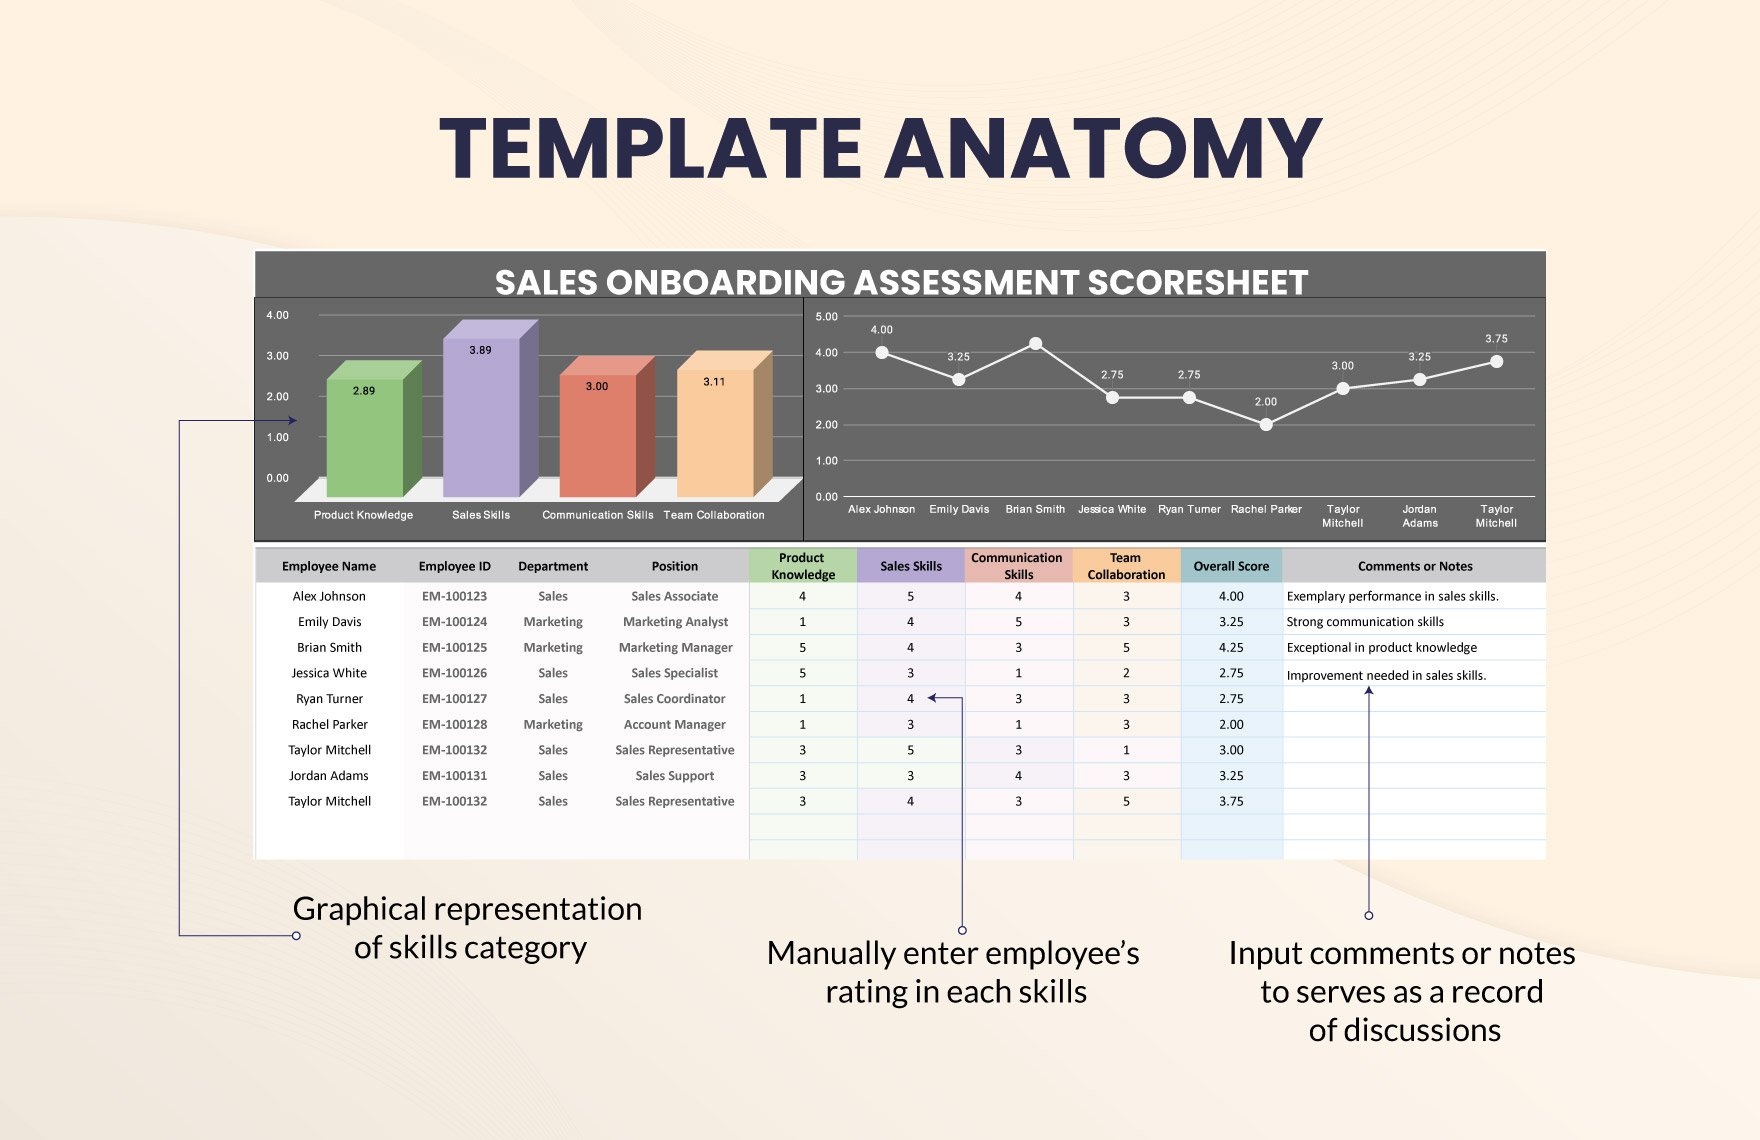 Sales Onboarding Assessment Scoresheet Template